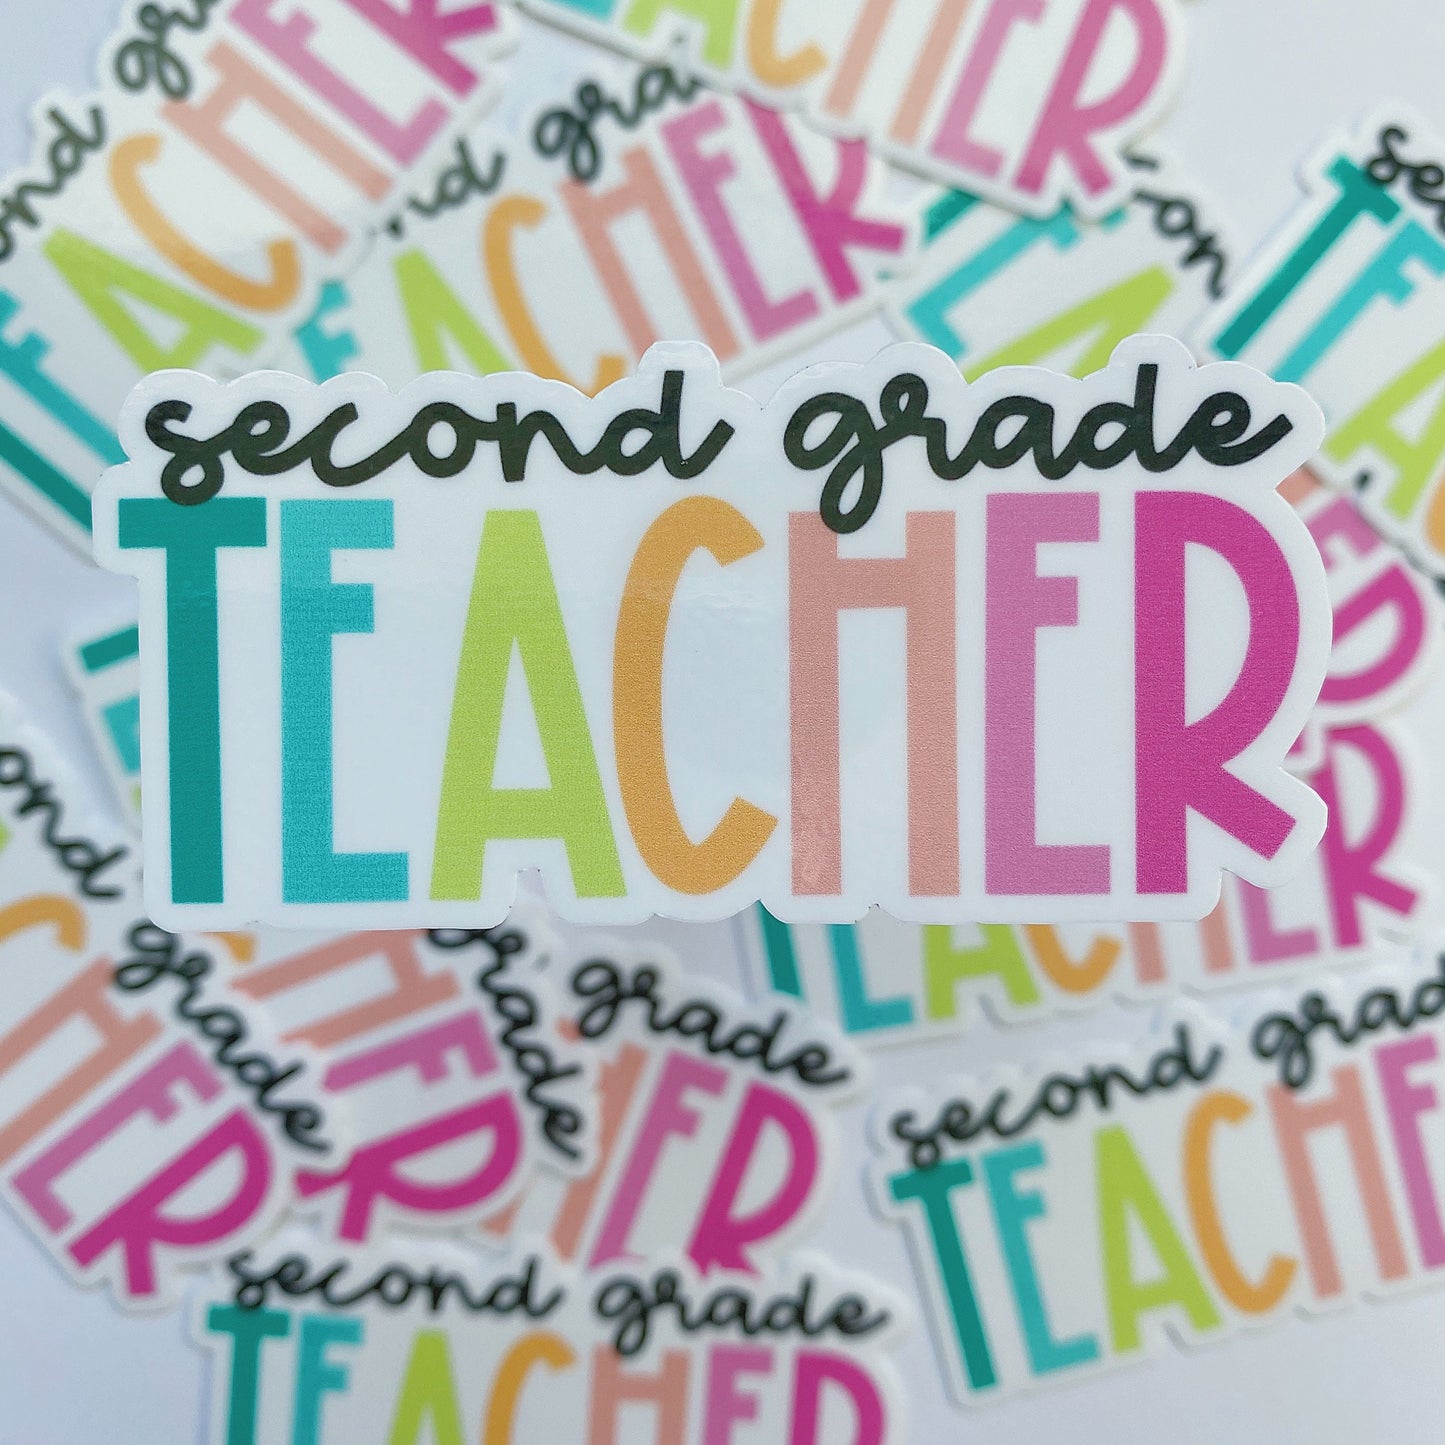 Second Grade Teacher Sticker